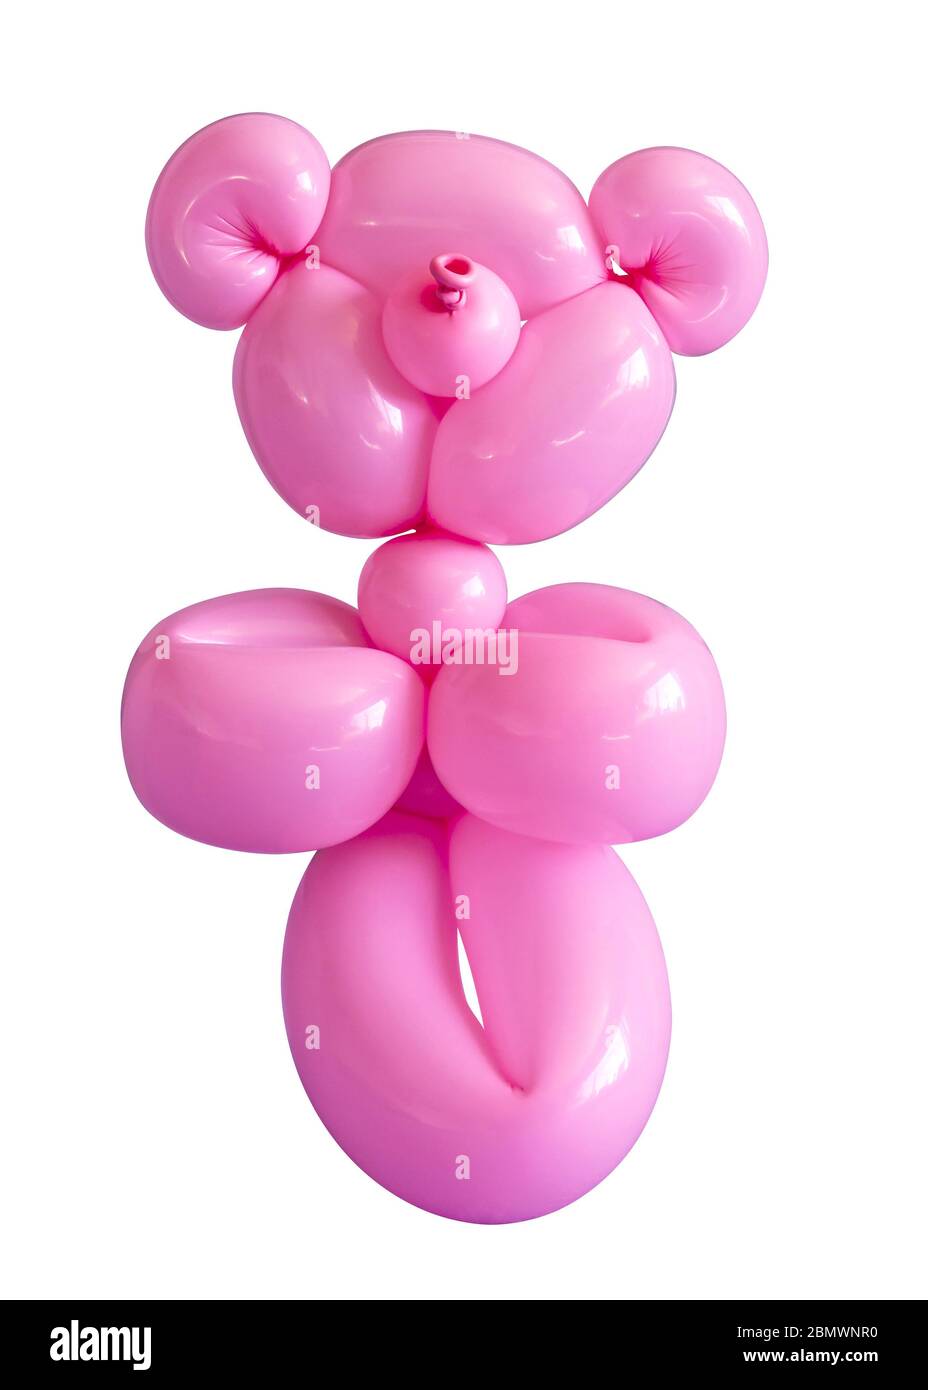 Geschnitzte rosa Teddybär Ballon Party Spielzeug isoliert auf einem weißen Hintergrund Stockfoto